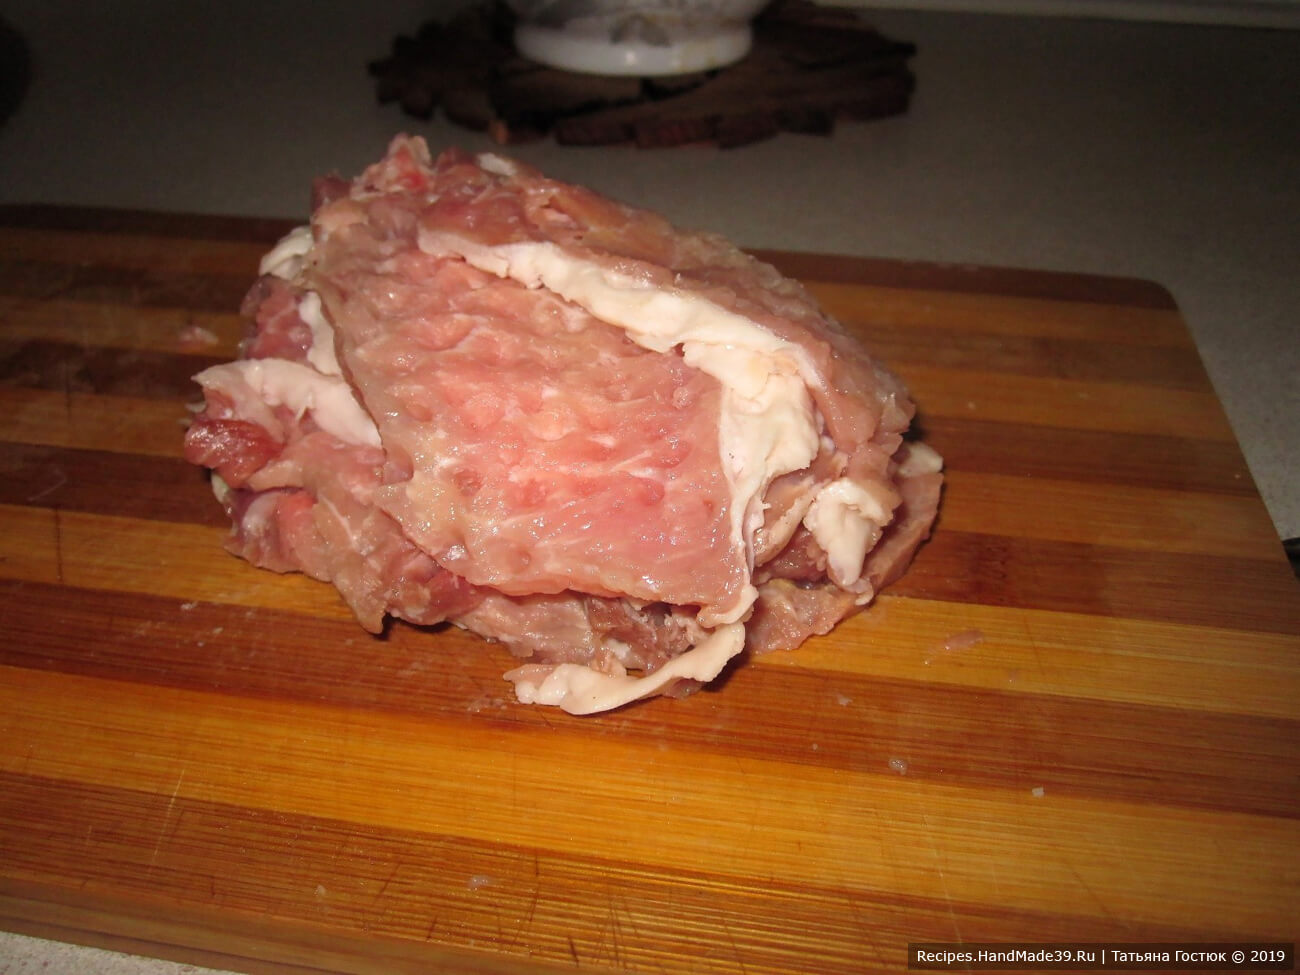 Отбить мясо с обеих сторон, чтобы каждый кусок получился толщиной не более 2 мм